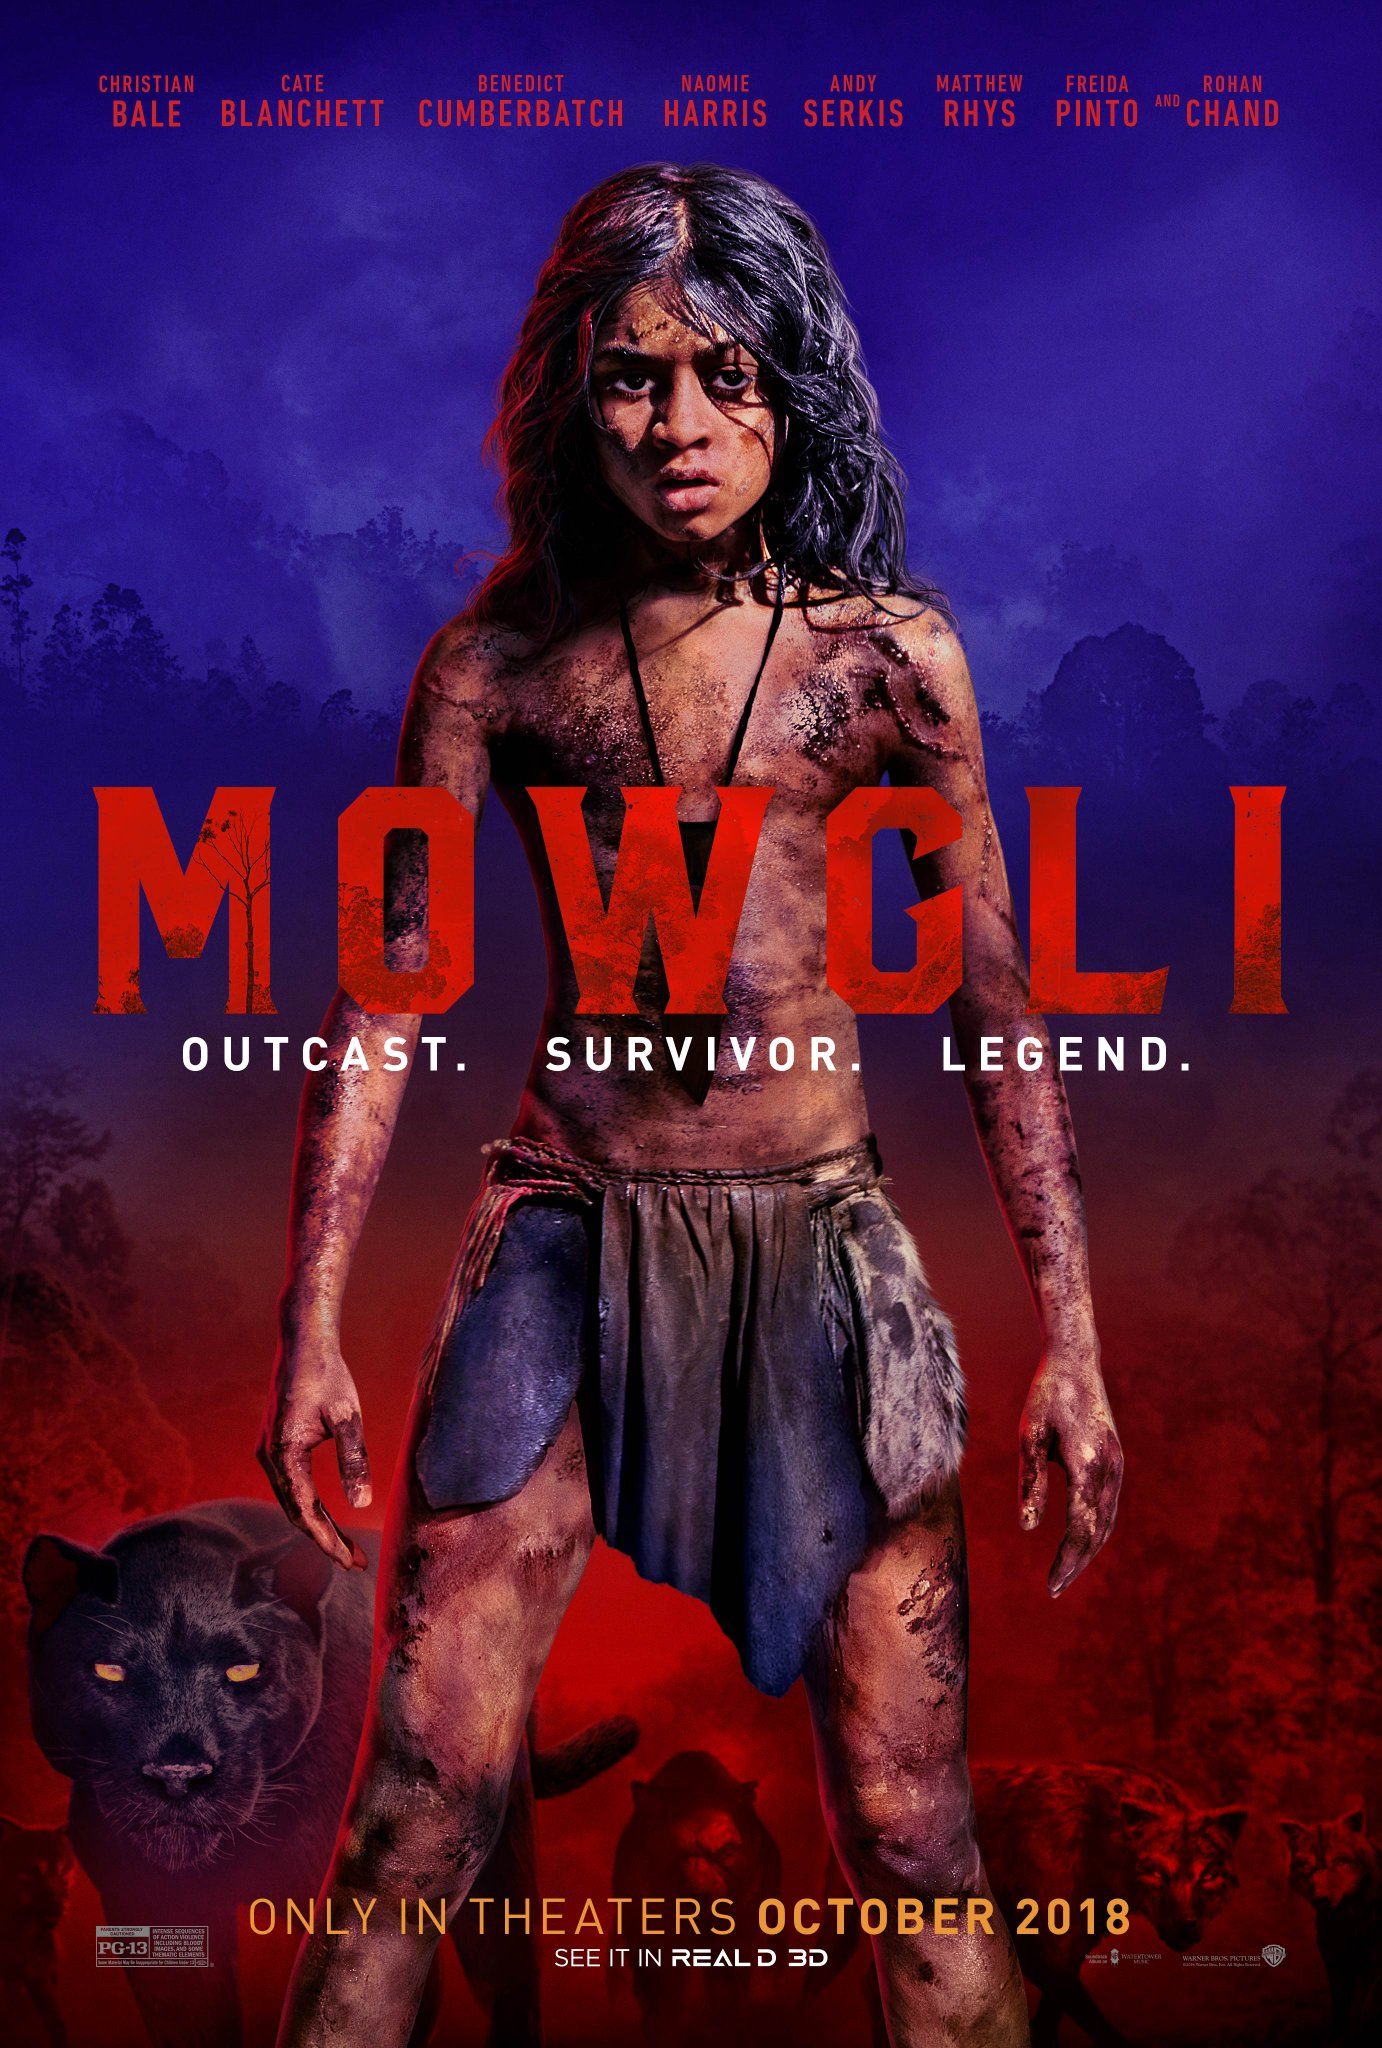 Mowgli Trailer: The Jungle Book Gets a Darker Makeover